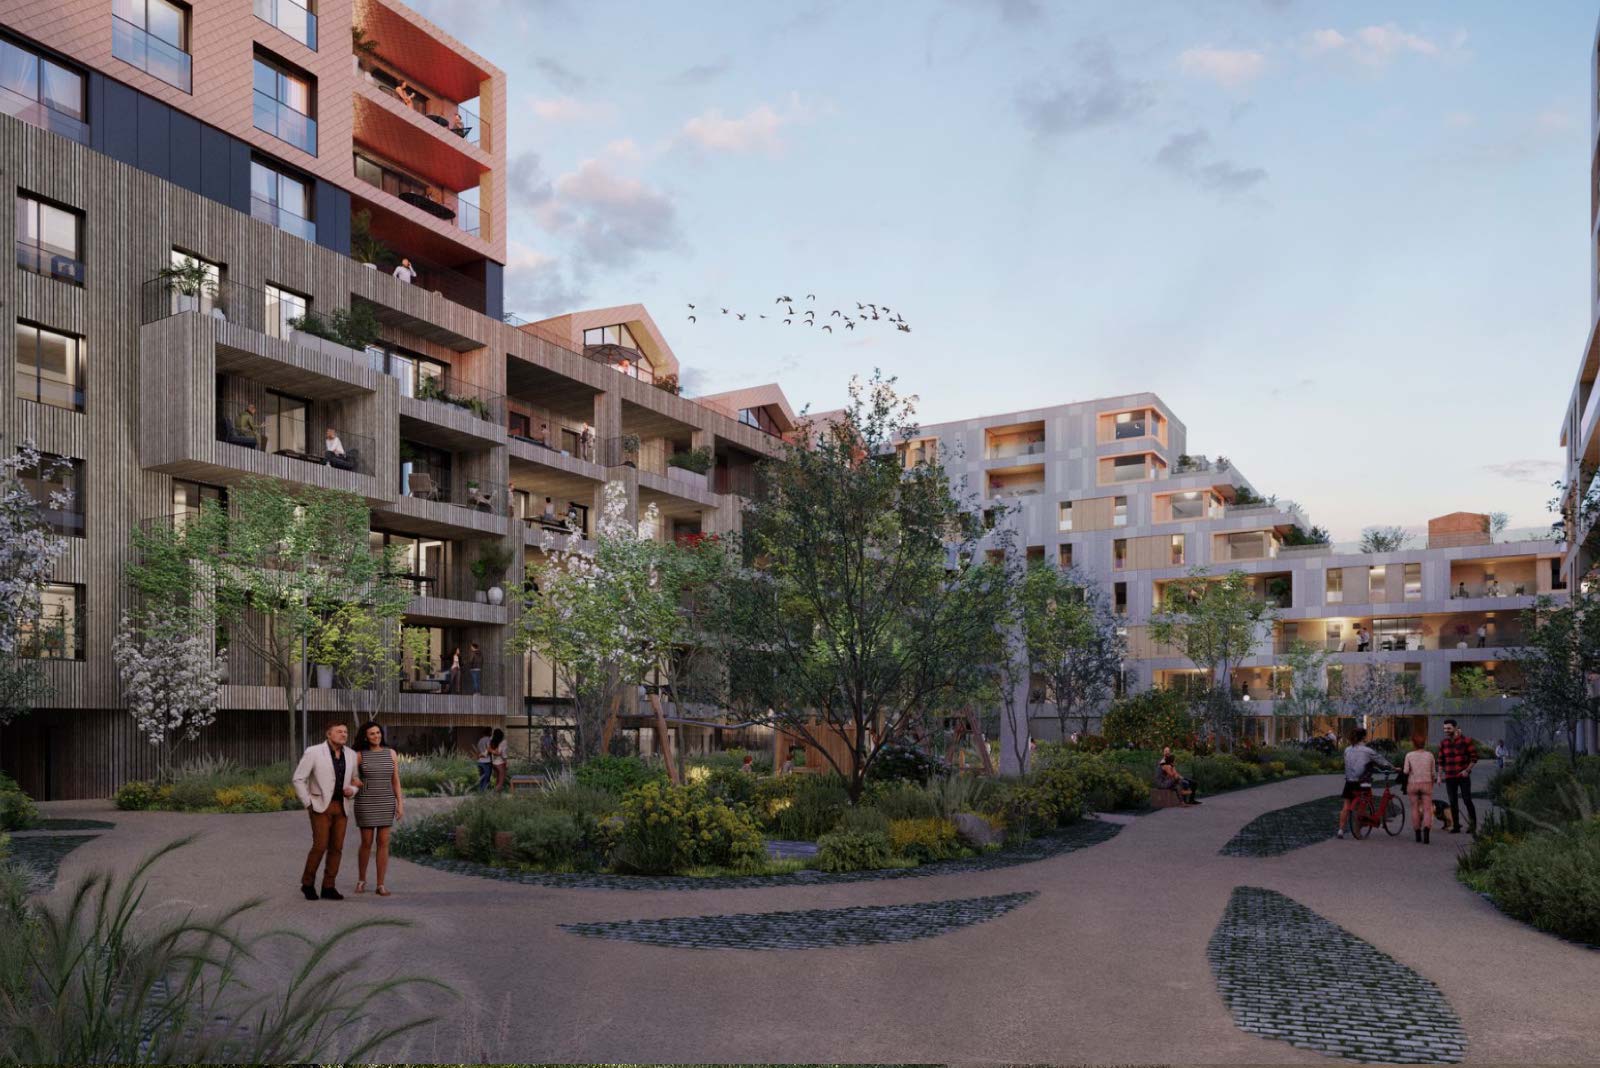 Rout Lëns : Le nouveau quartier durable, innovant et résilient à Esch-sur-Alzette